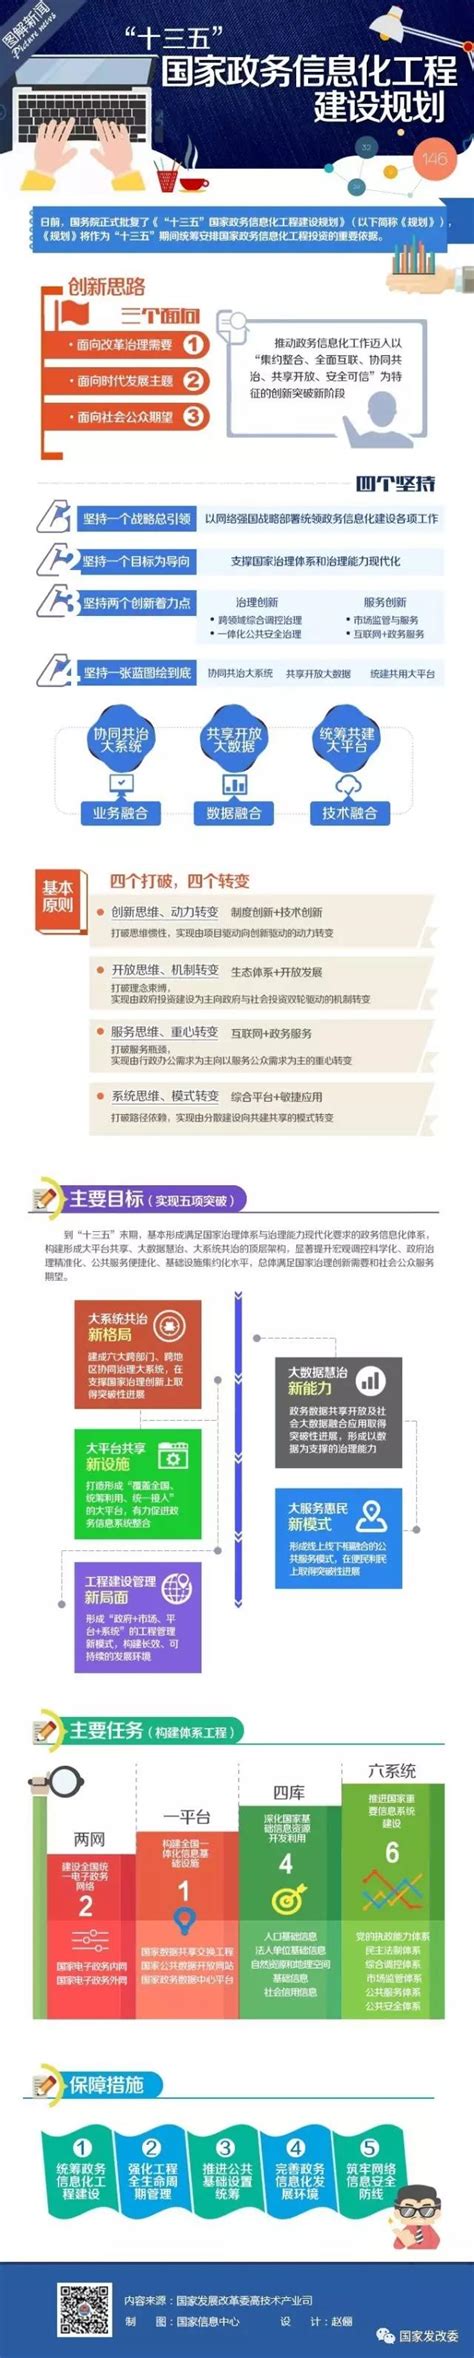 图解：“十三五”国家政务信息化工程建设规划 | 广州市发展和改革委员会网站